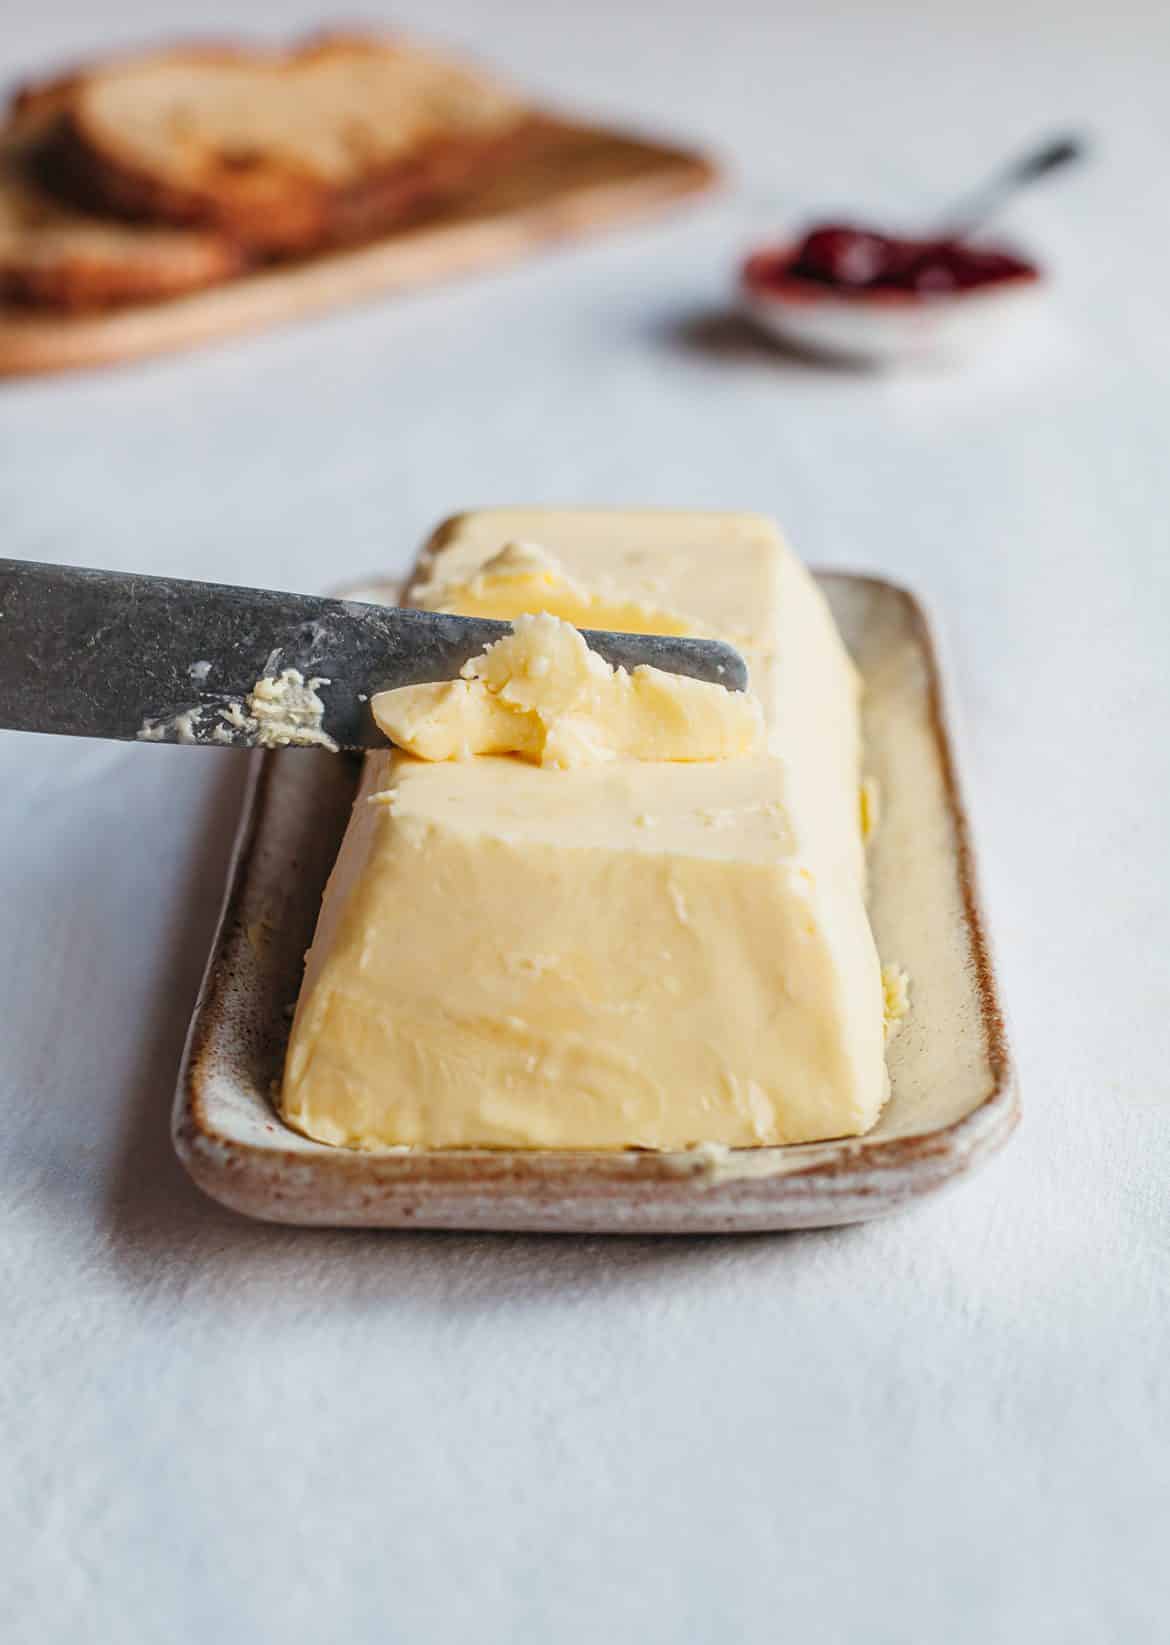 How To Make Vegan Butter So Vegan